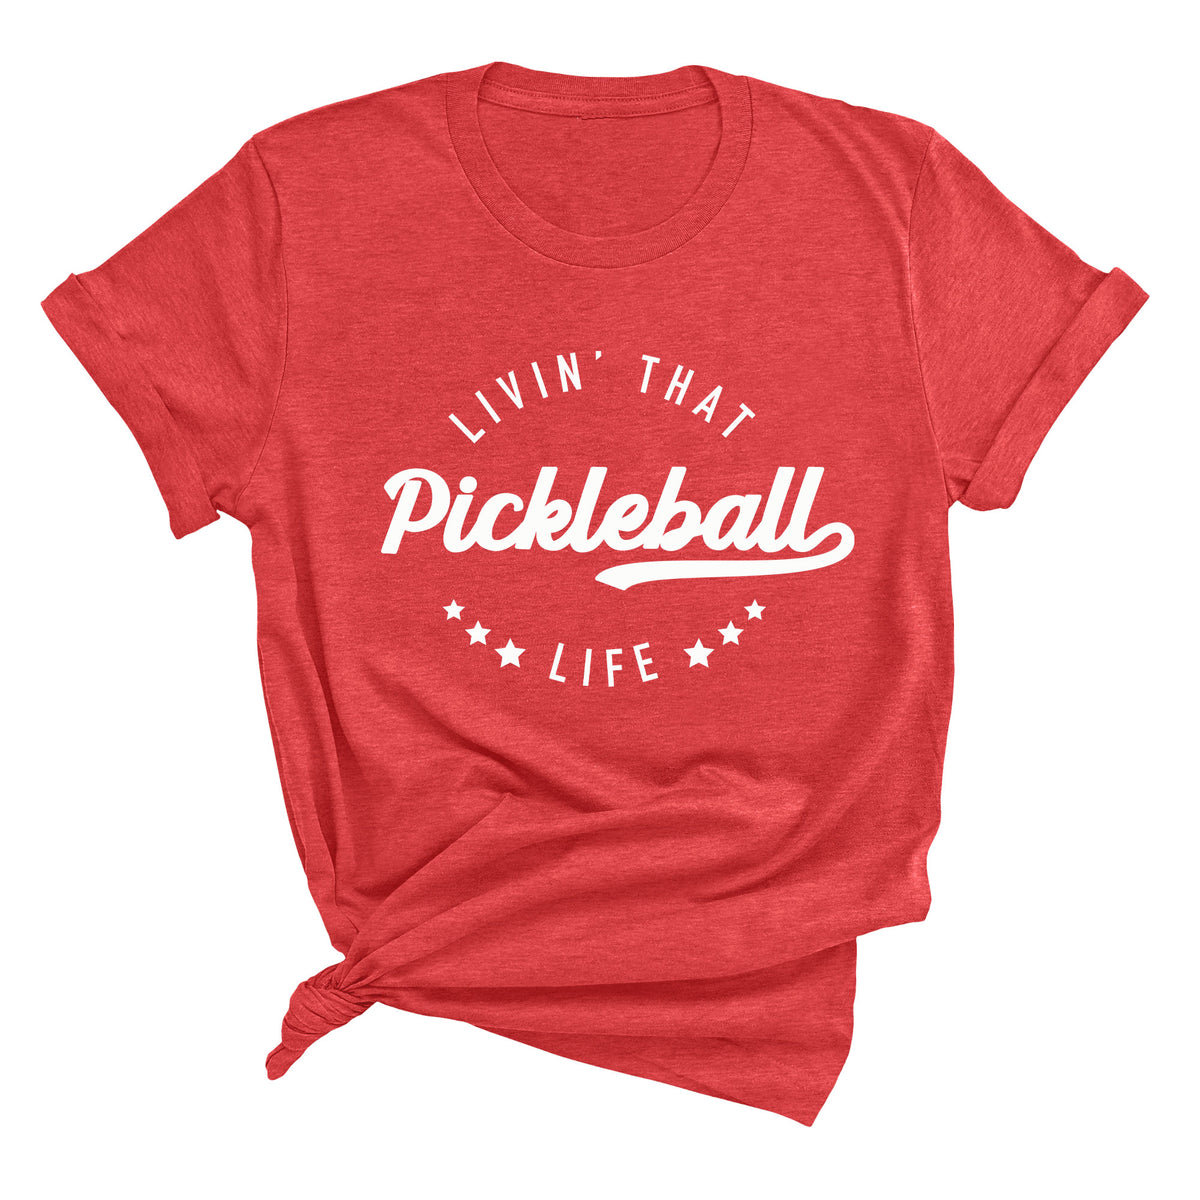 Livin' That Pickleball Life Unisex T-Shirt